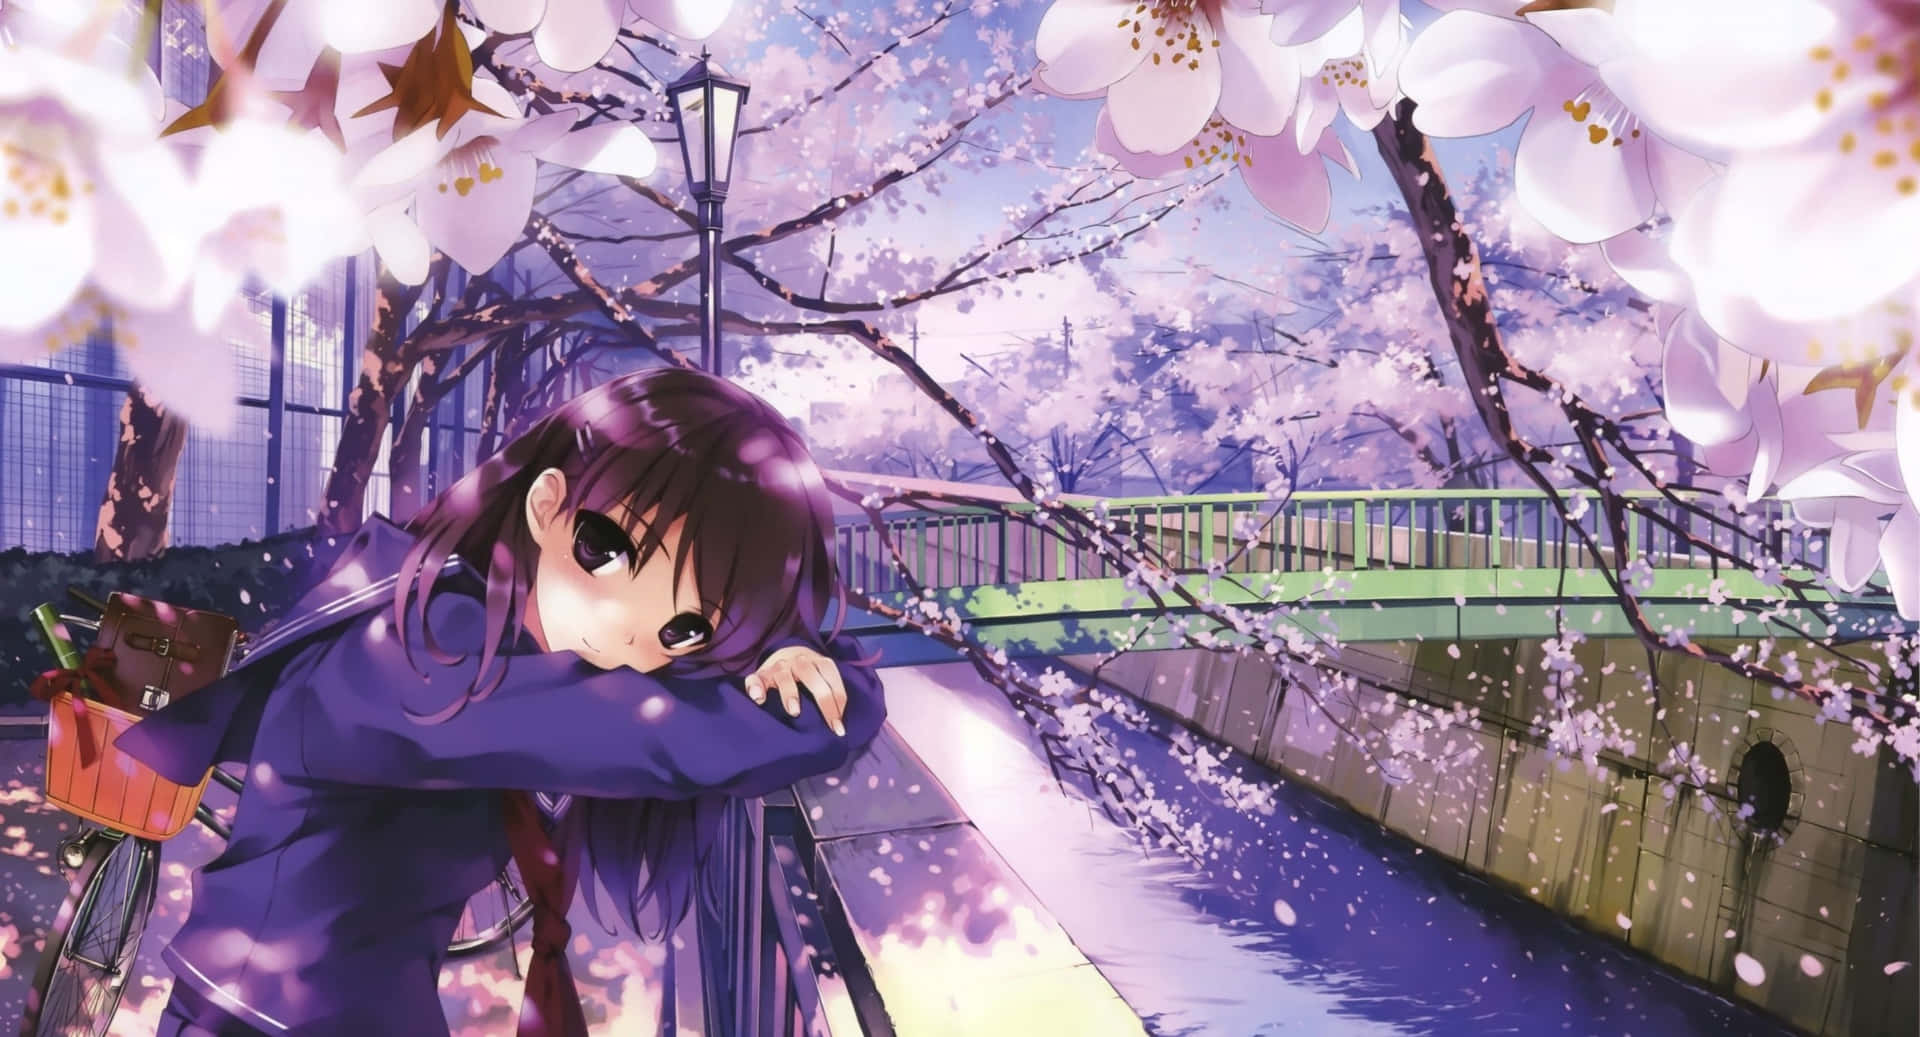 Einmädchen Sitzt Auf Einer Brücke Unter Kirschblüten. Wallpaper